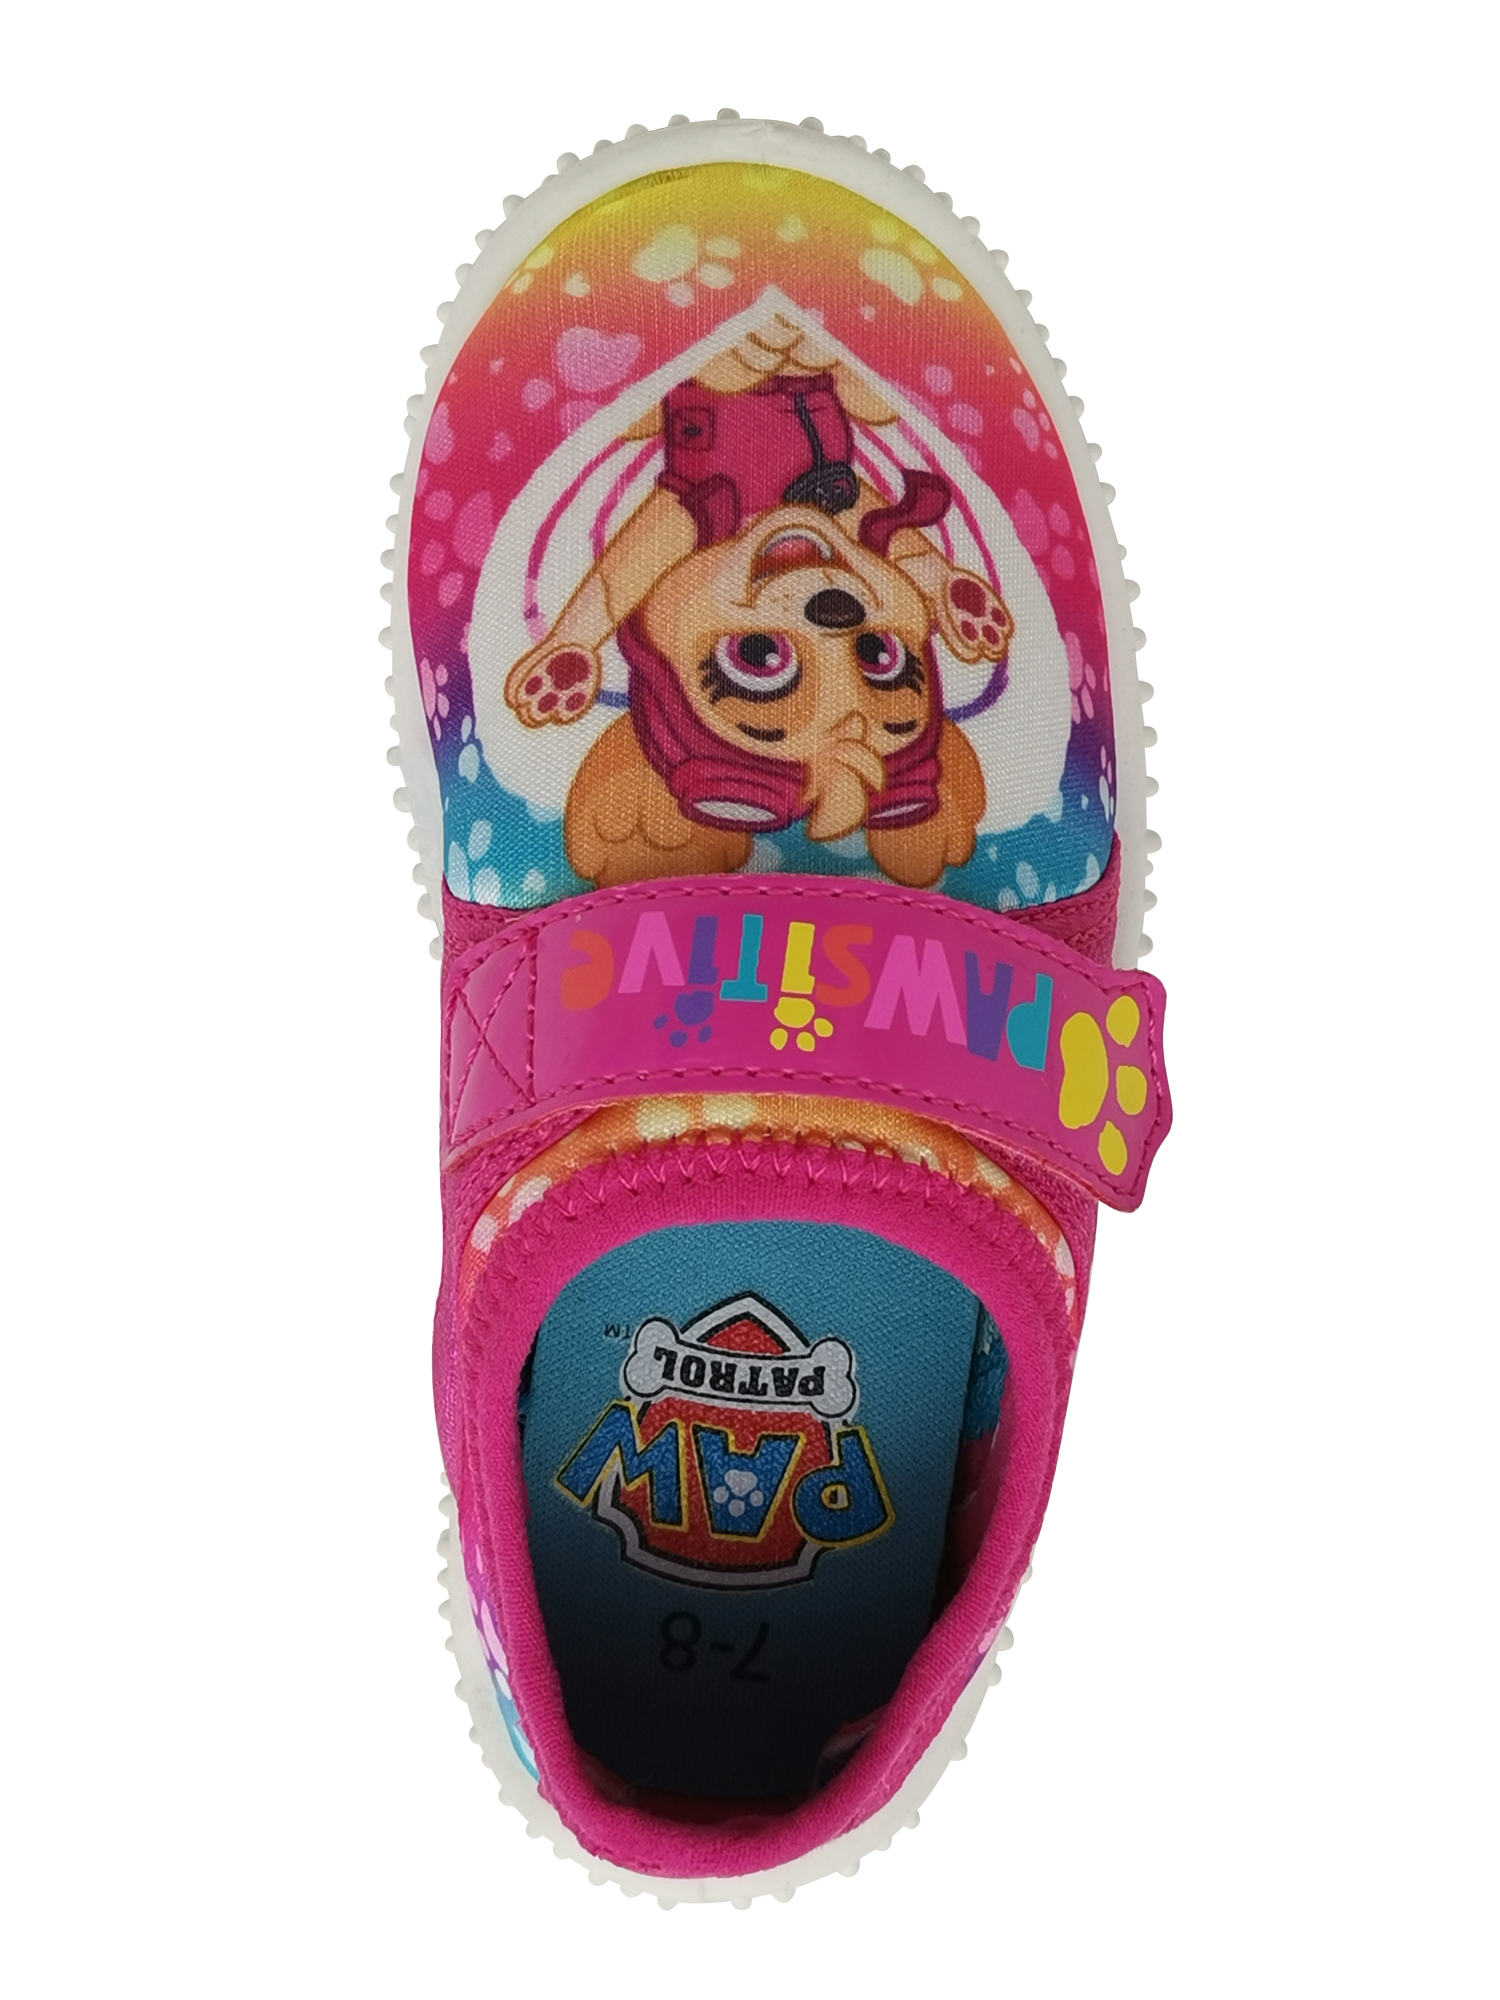 Nickelodeon Paw Patrol Summer Fun Beach Water Shoe (Toddler Girls) - image 3 of 6